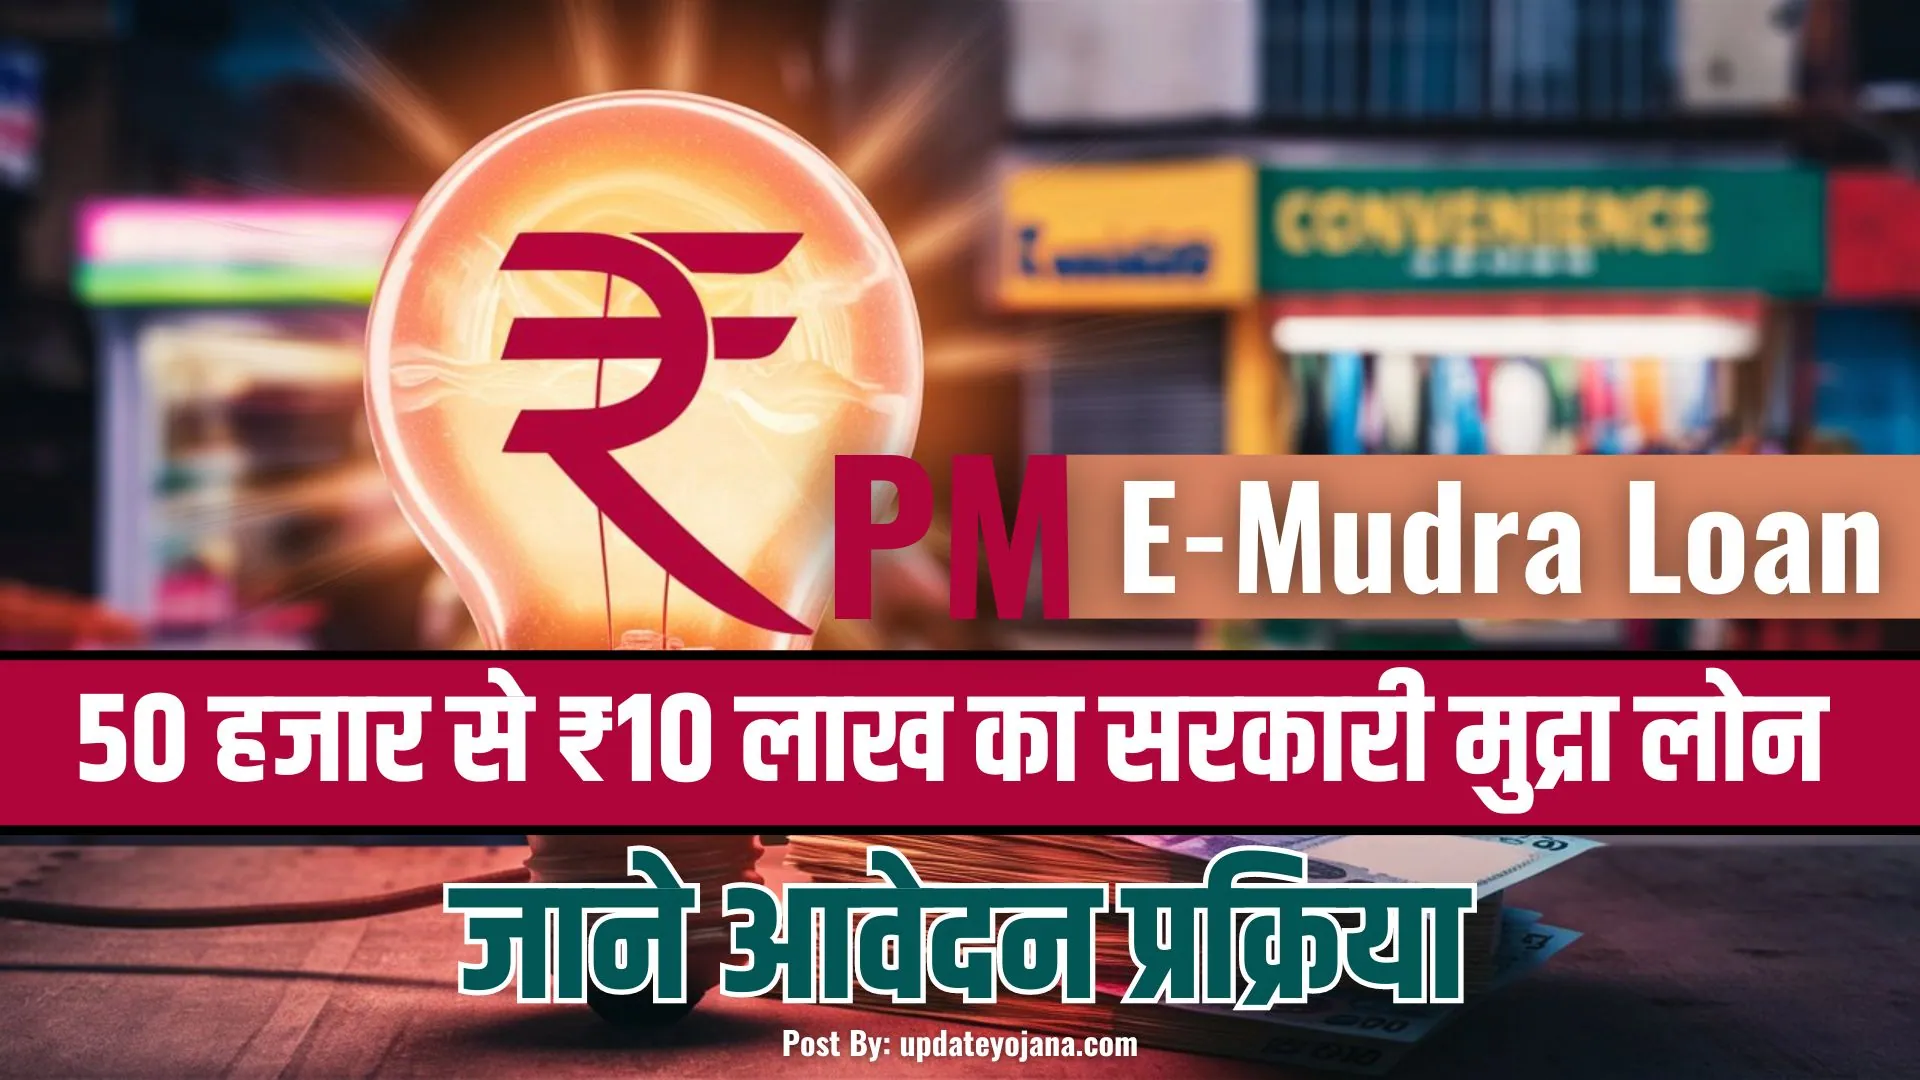 PM-E-Mudra-Loan